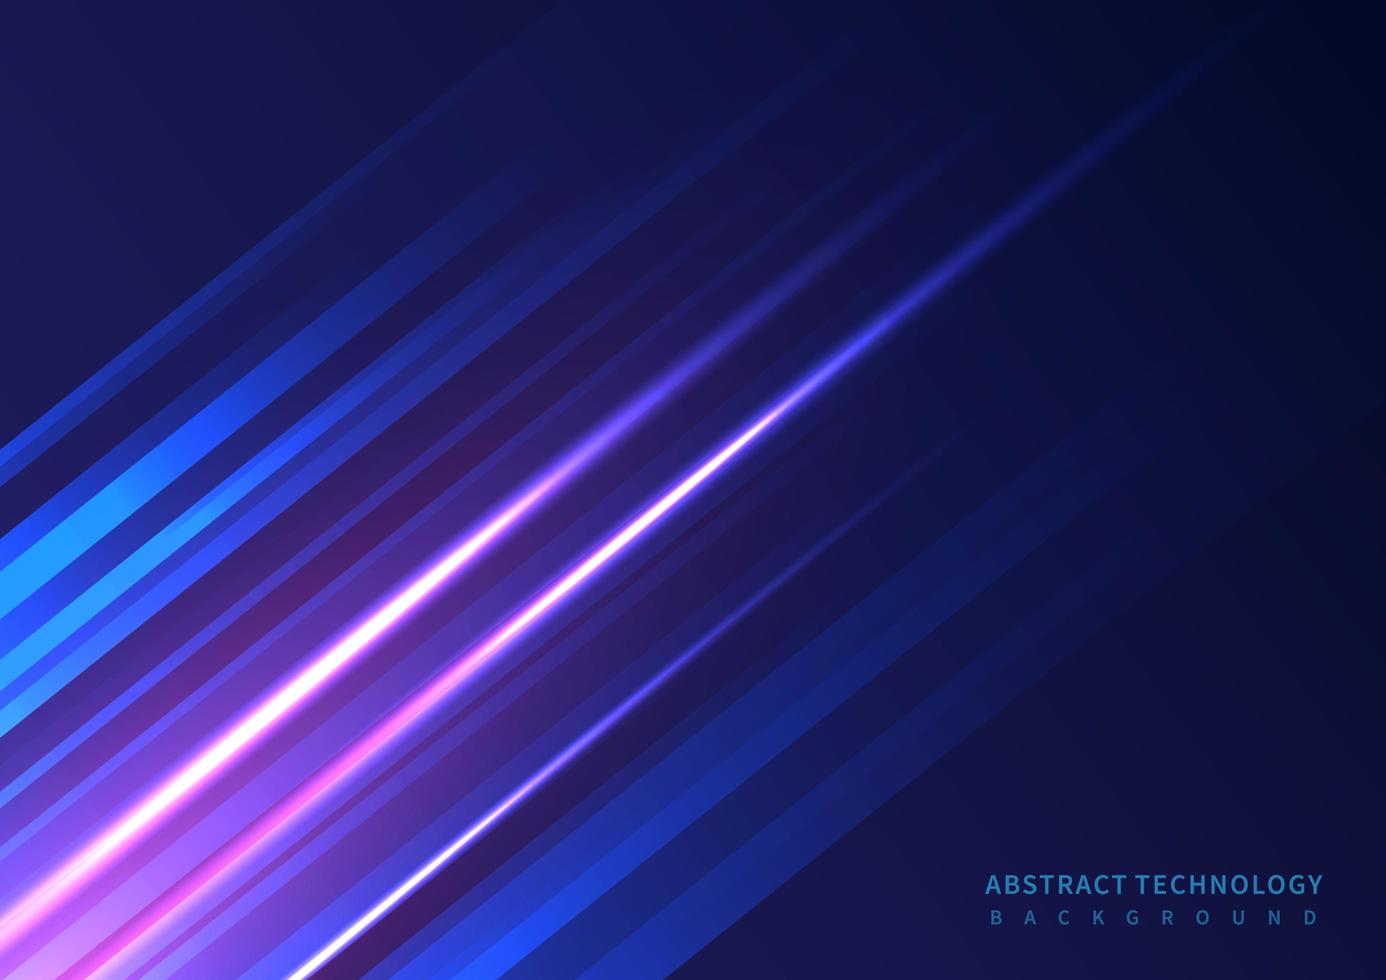 abstracte technologie futuristische diagonale lijnen met roze verlichting op donkerblauwe achtergrond vector